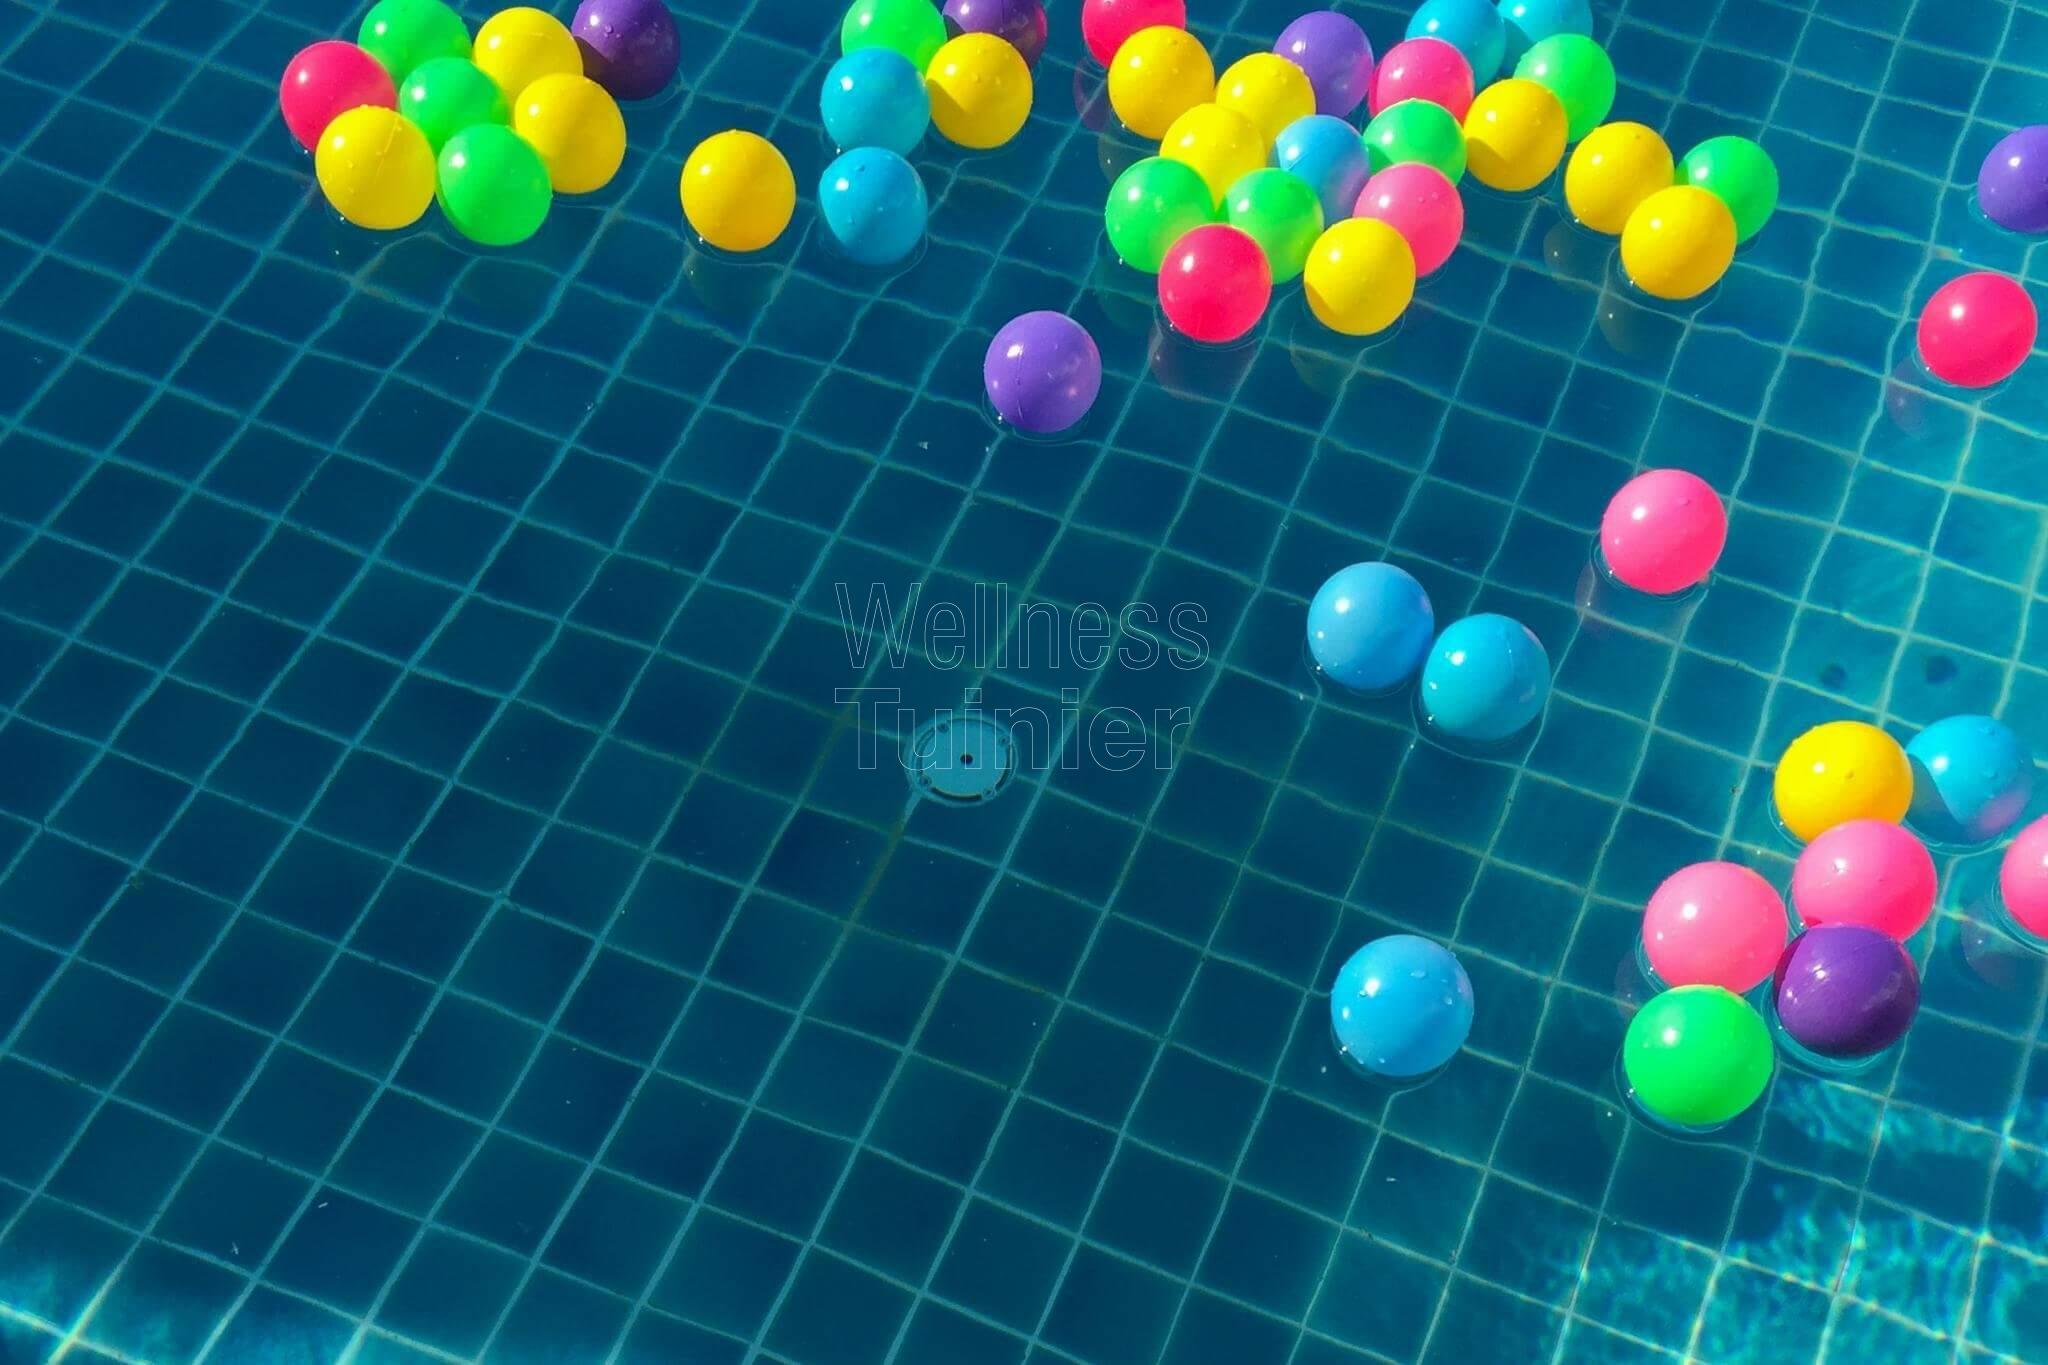 Een zwembad met bedieningspaneel; kleurtjes, muziek en/of dekzeil; bestaat dat?